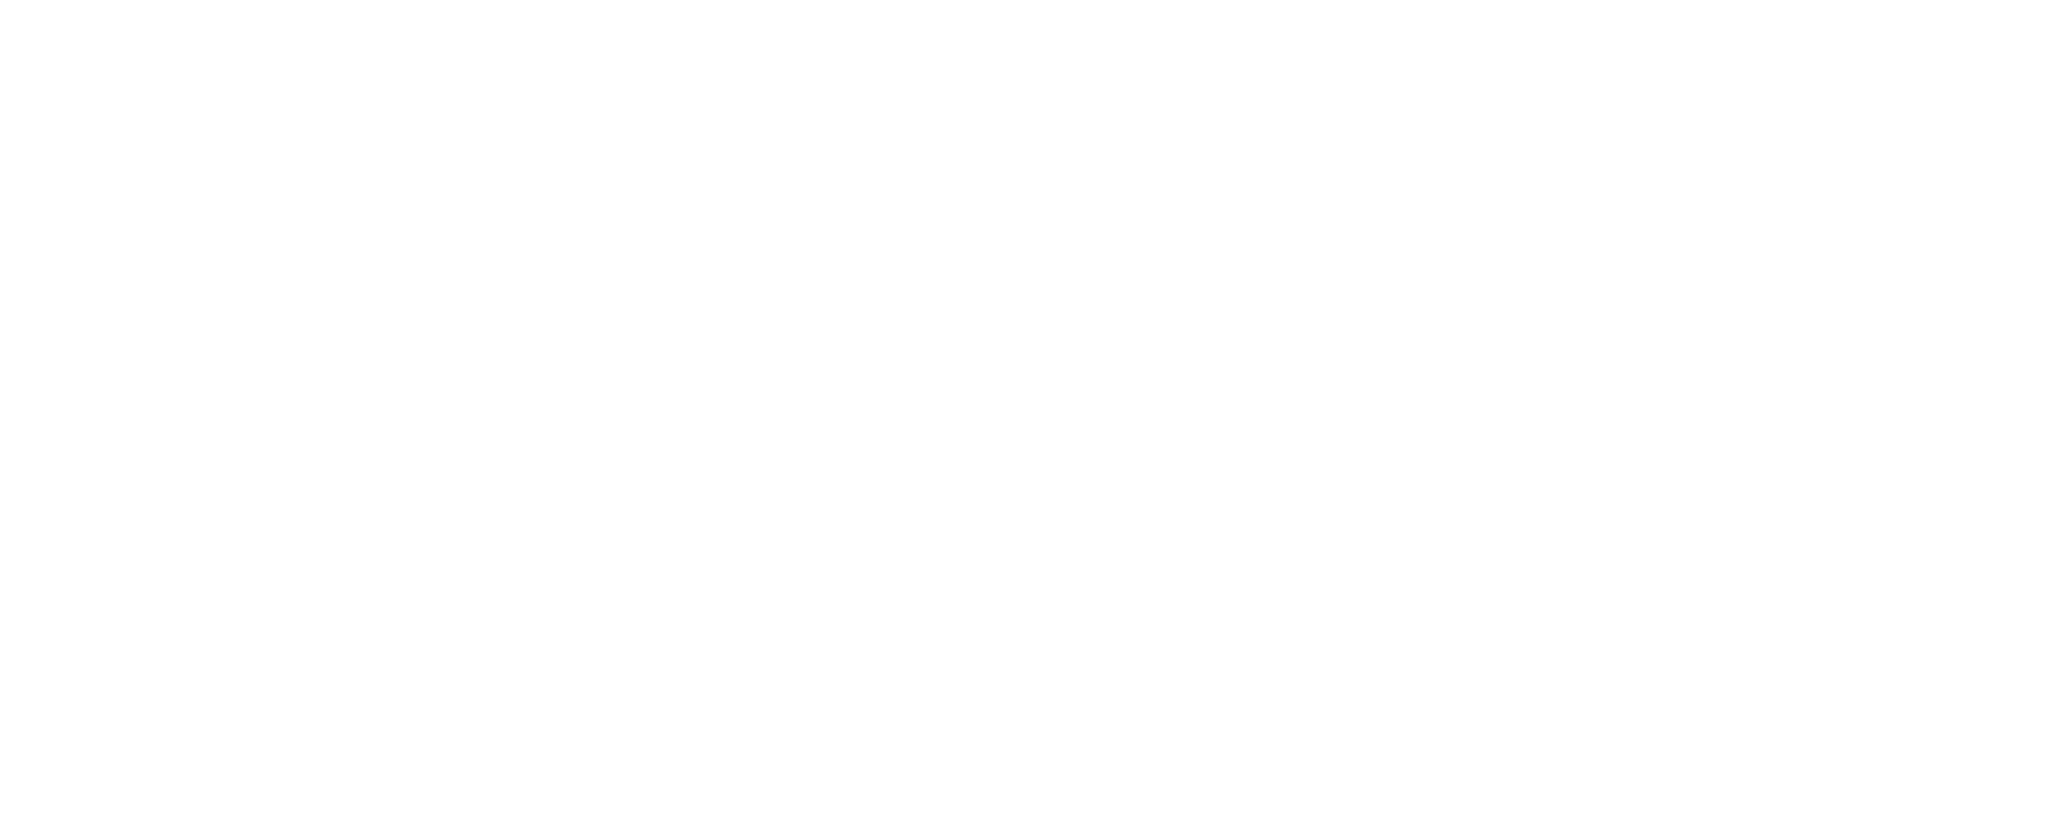 CityMall